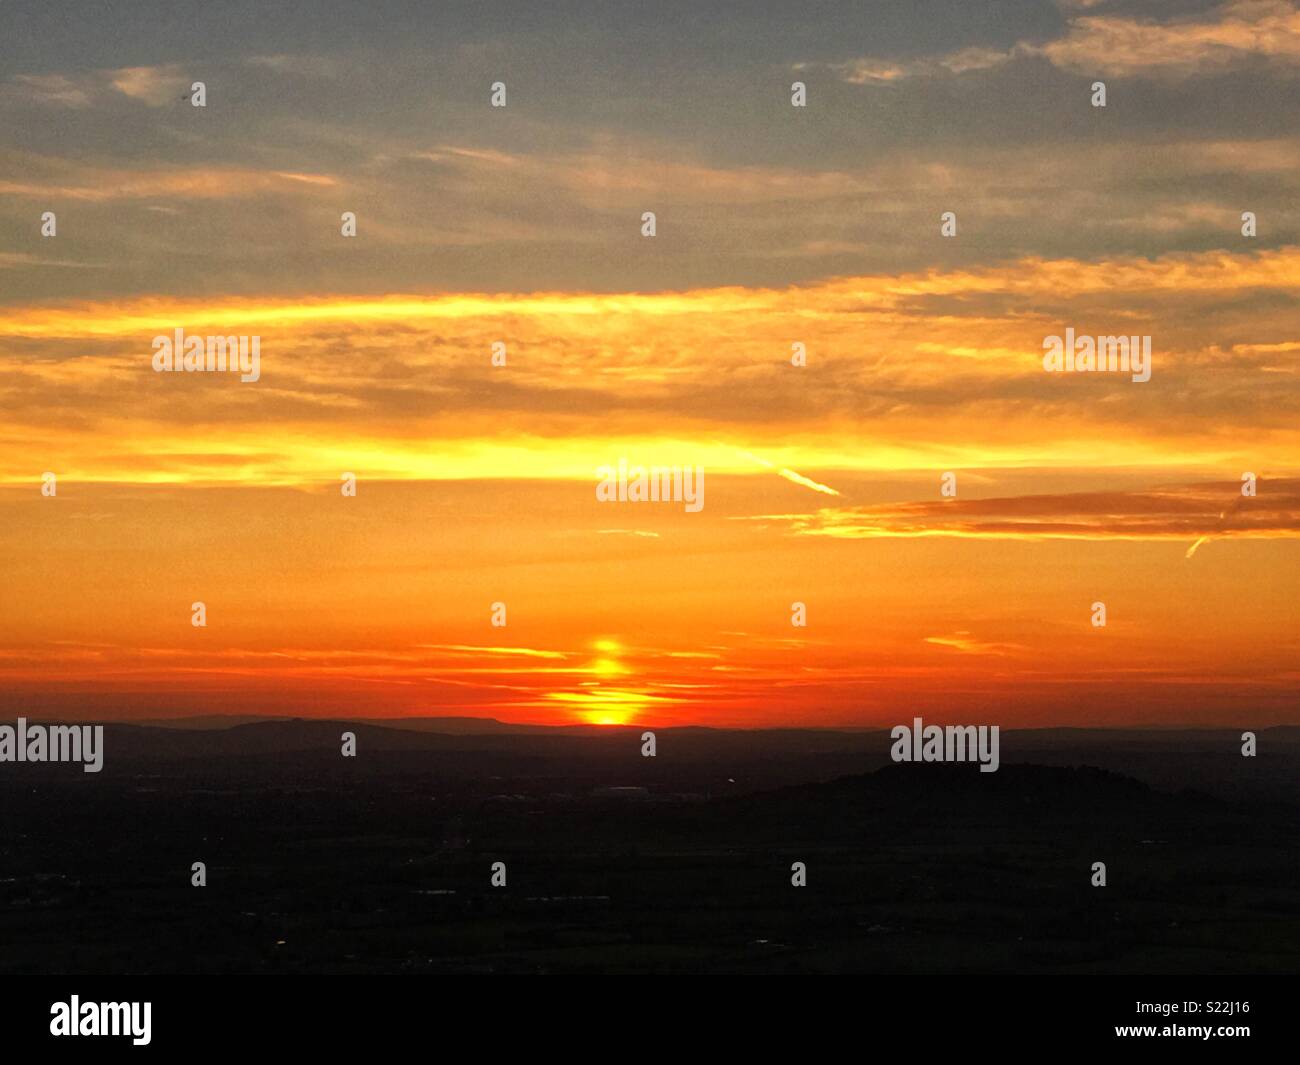 En haut de la colline birdlip lorsque le soleil se couche, Gloucestershire Angleterre Banque D'Images